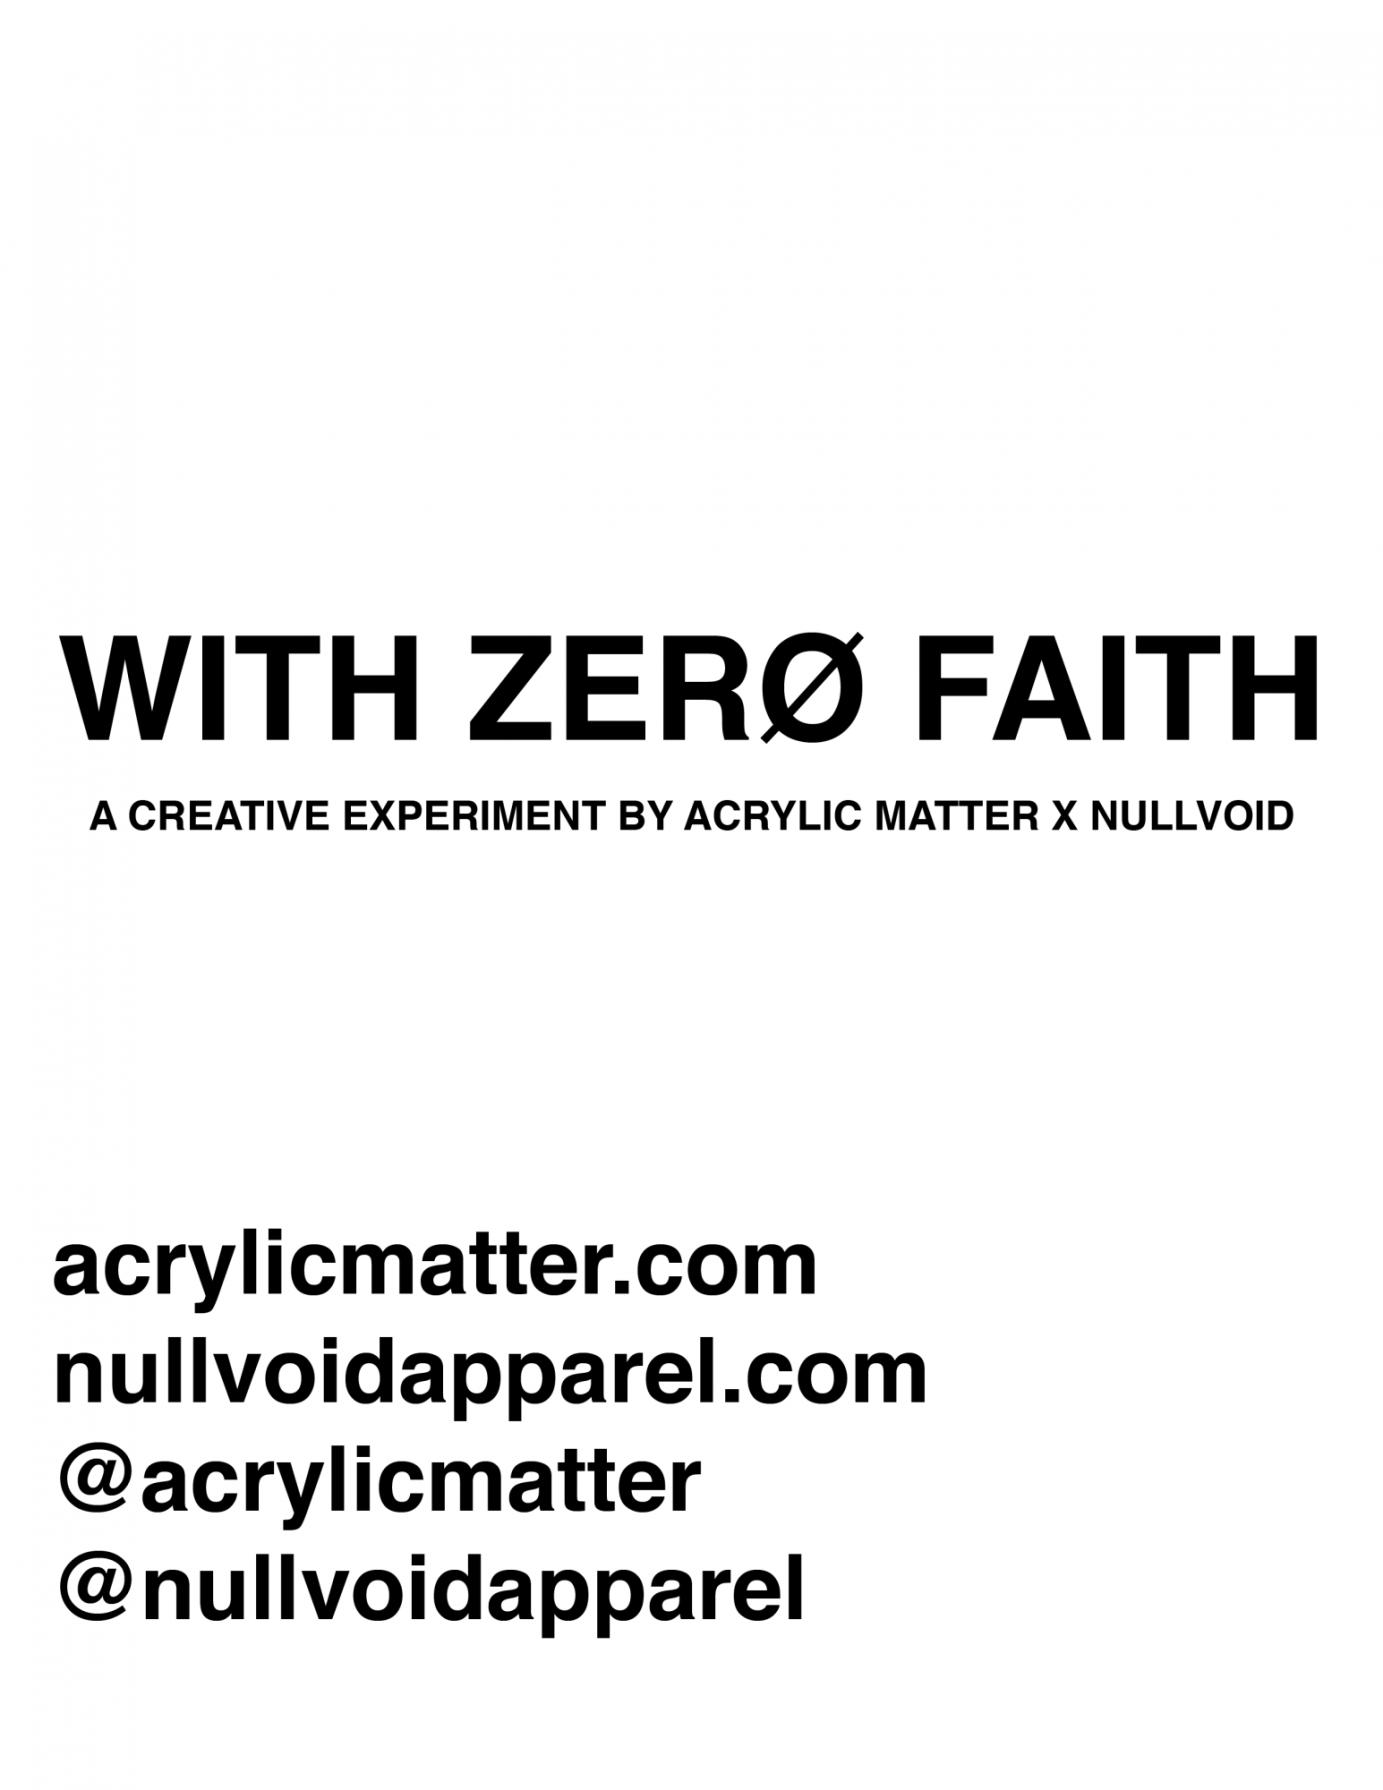 nullvoid x acrylic matter "with zero faith" catalog